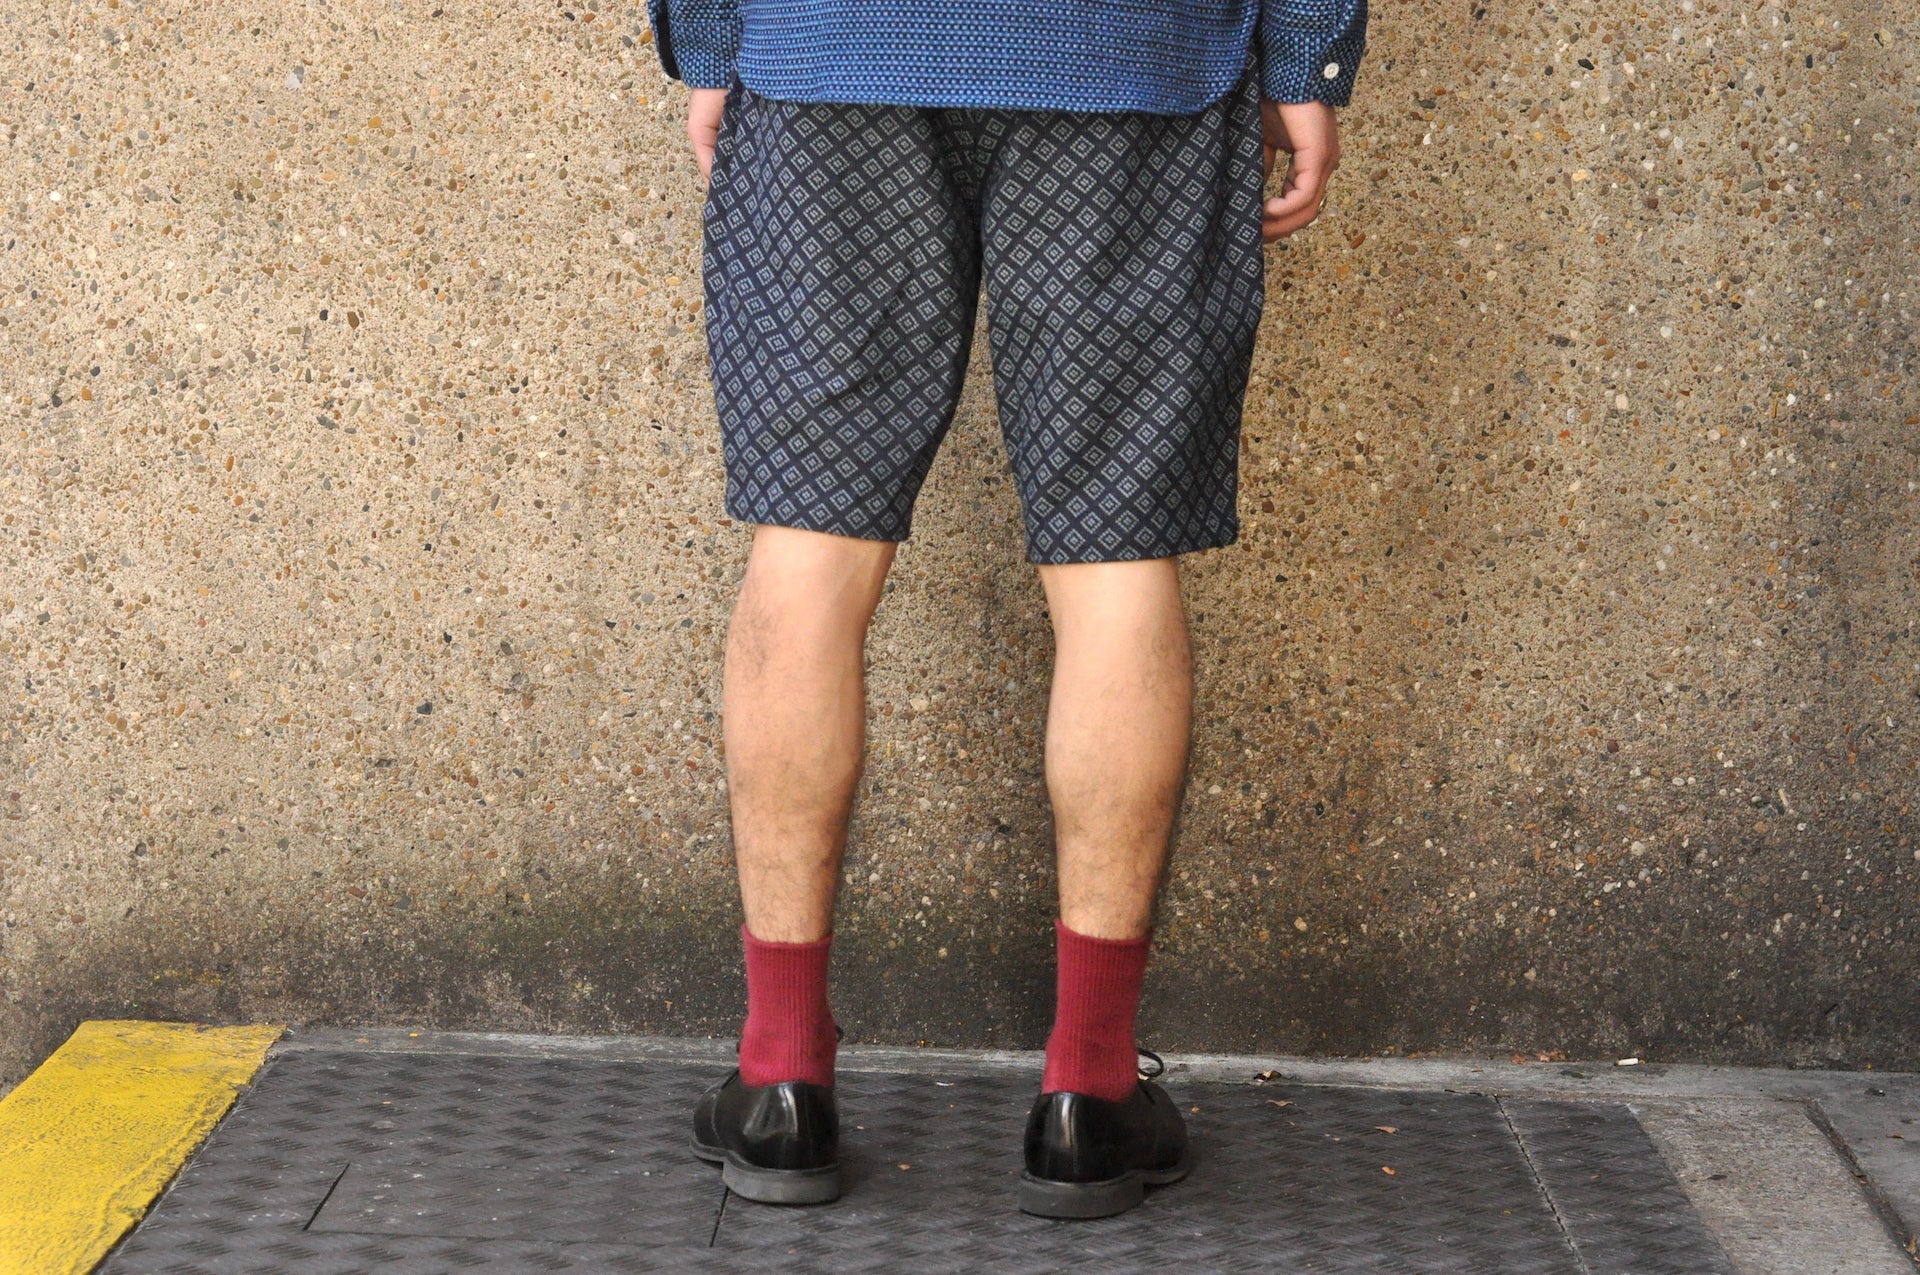 Samurai Indigo Dyed "Diamond" Sashiko Coastal Shorts